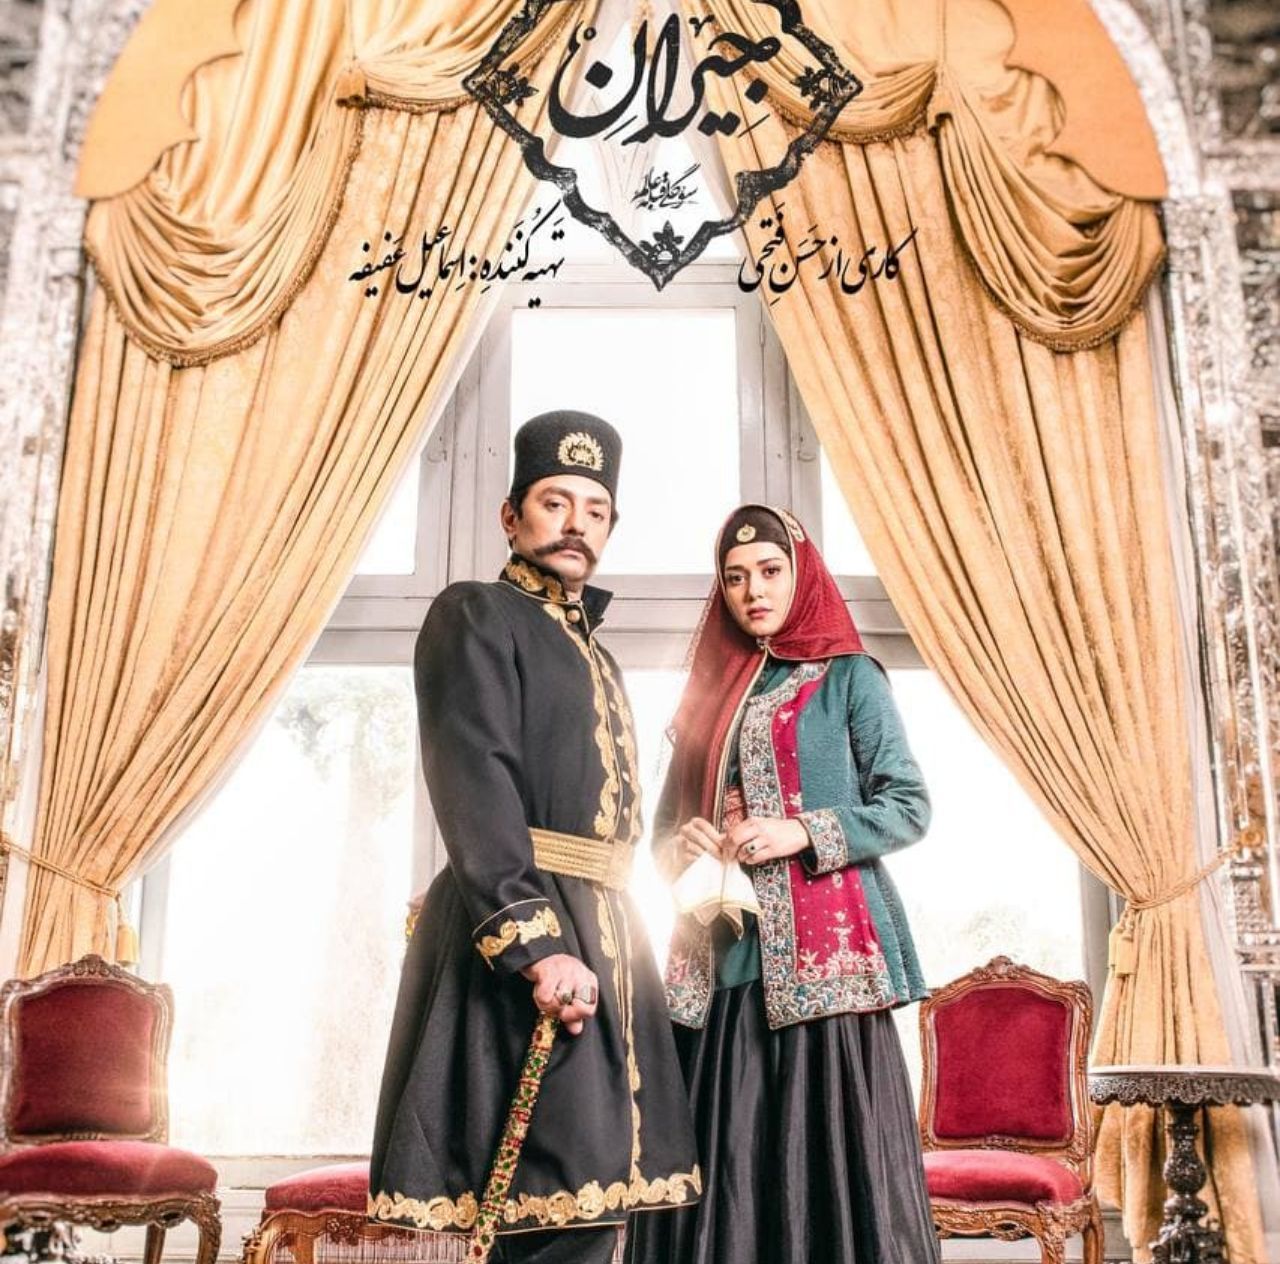 آغاز سریال «جیران» با نماهای زیبای کاخ گلستان